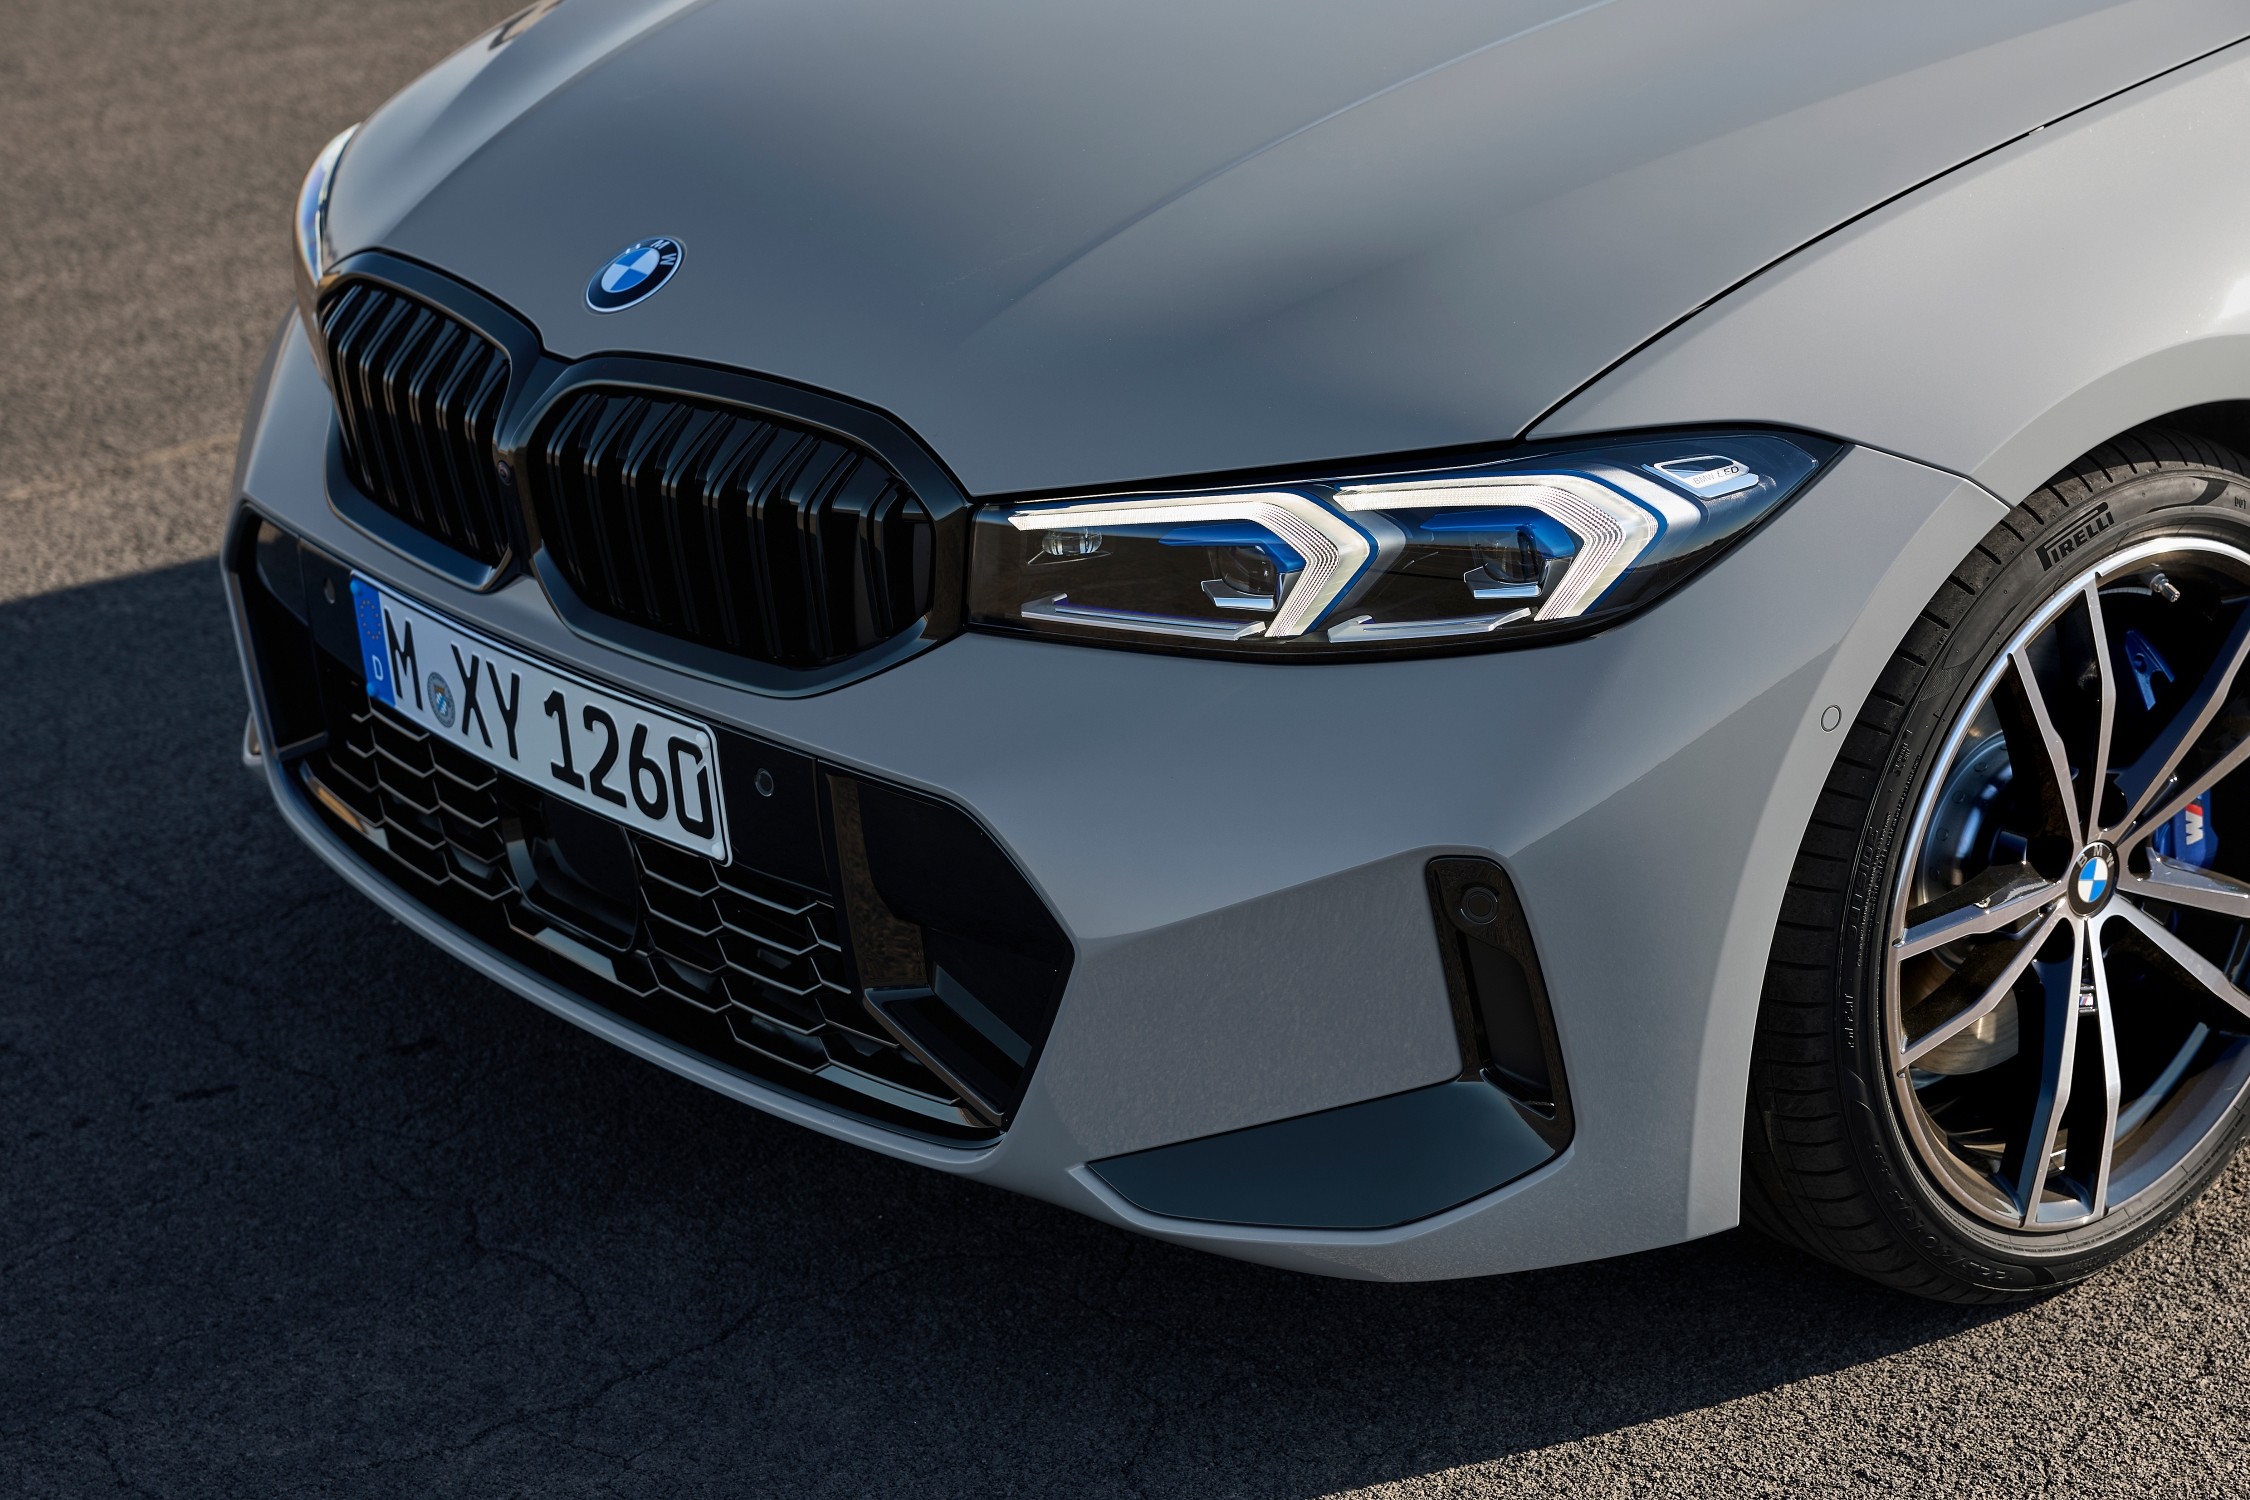 Novi BMW 318d uz bogatu opremu može biti vaš po cijeni već od 333.000 kuna